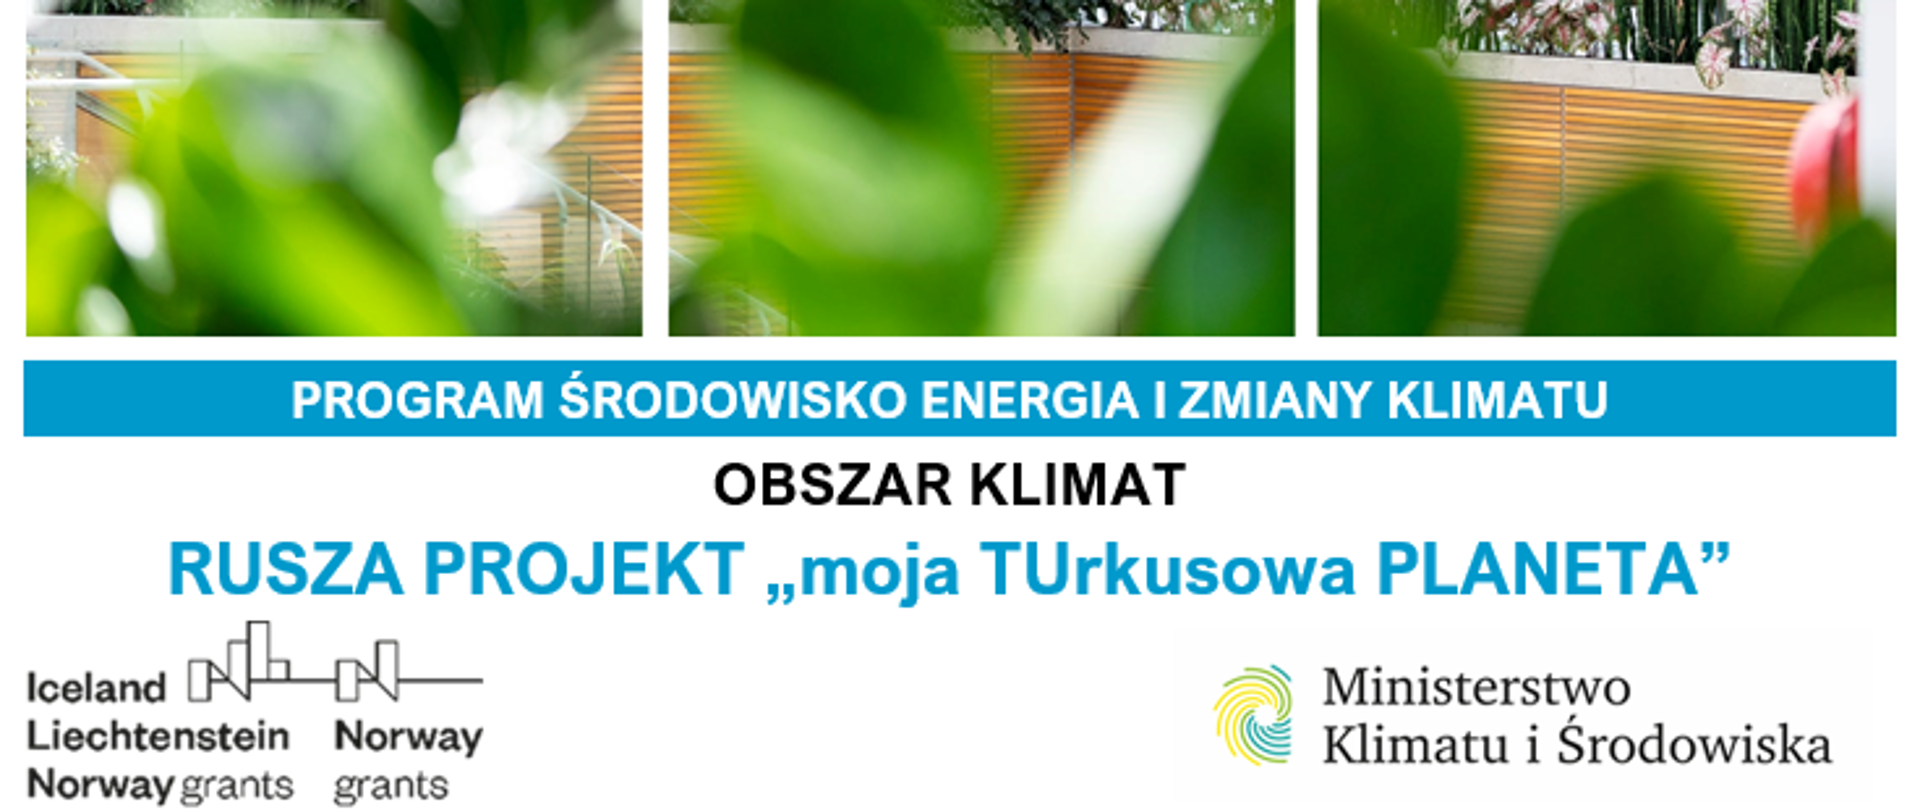 Projekt moja TUrkusowa PLANETA - działania szkół powiatu piaseczyńskiego podnoszące świadomość na temat łagodzenia zmian klimatu i przystosowania się do ich skutków